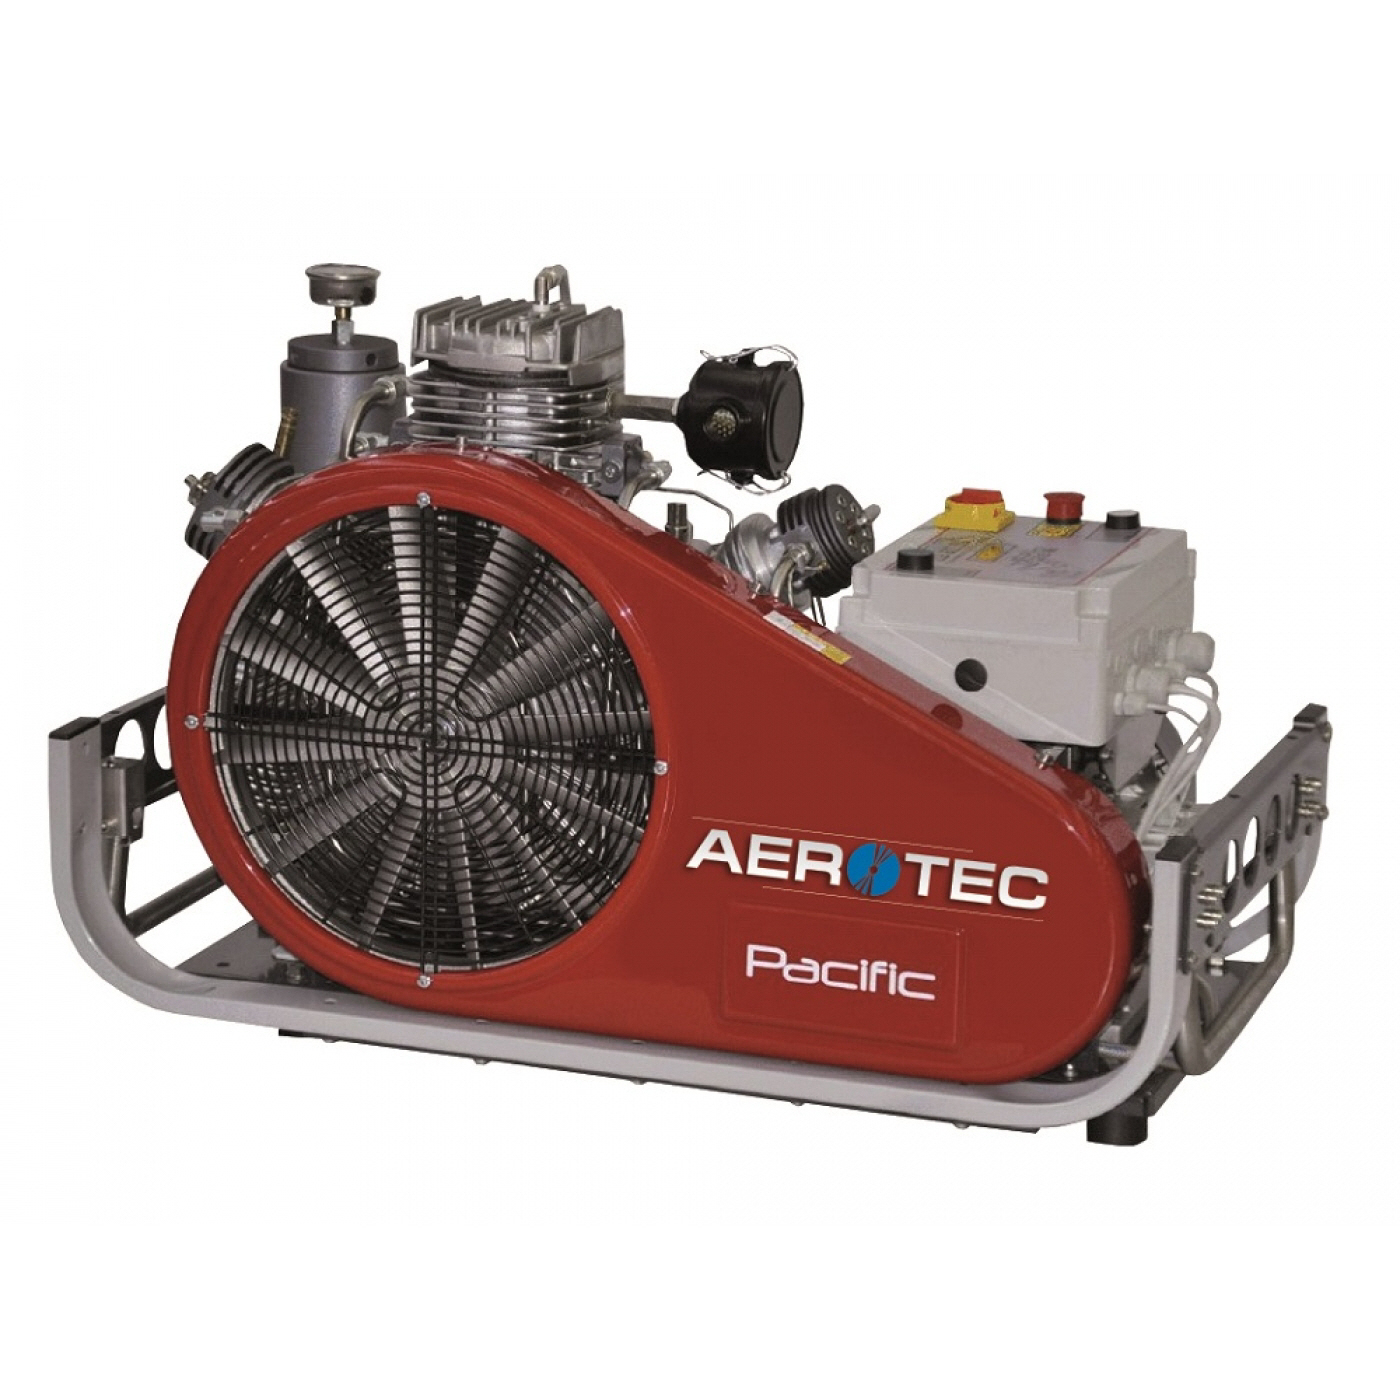 AEROTEC Kolbenkompressor PACIFIC E 35 - 330 bar Hochdruck - Kompressor Tauchkompressoren